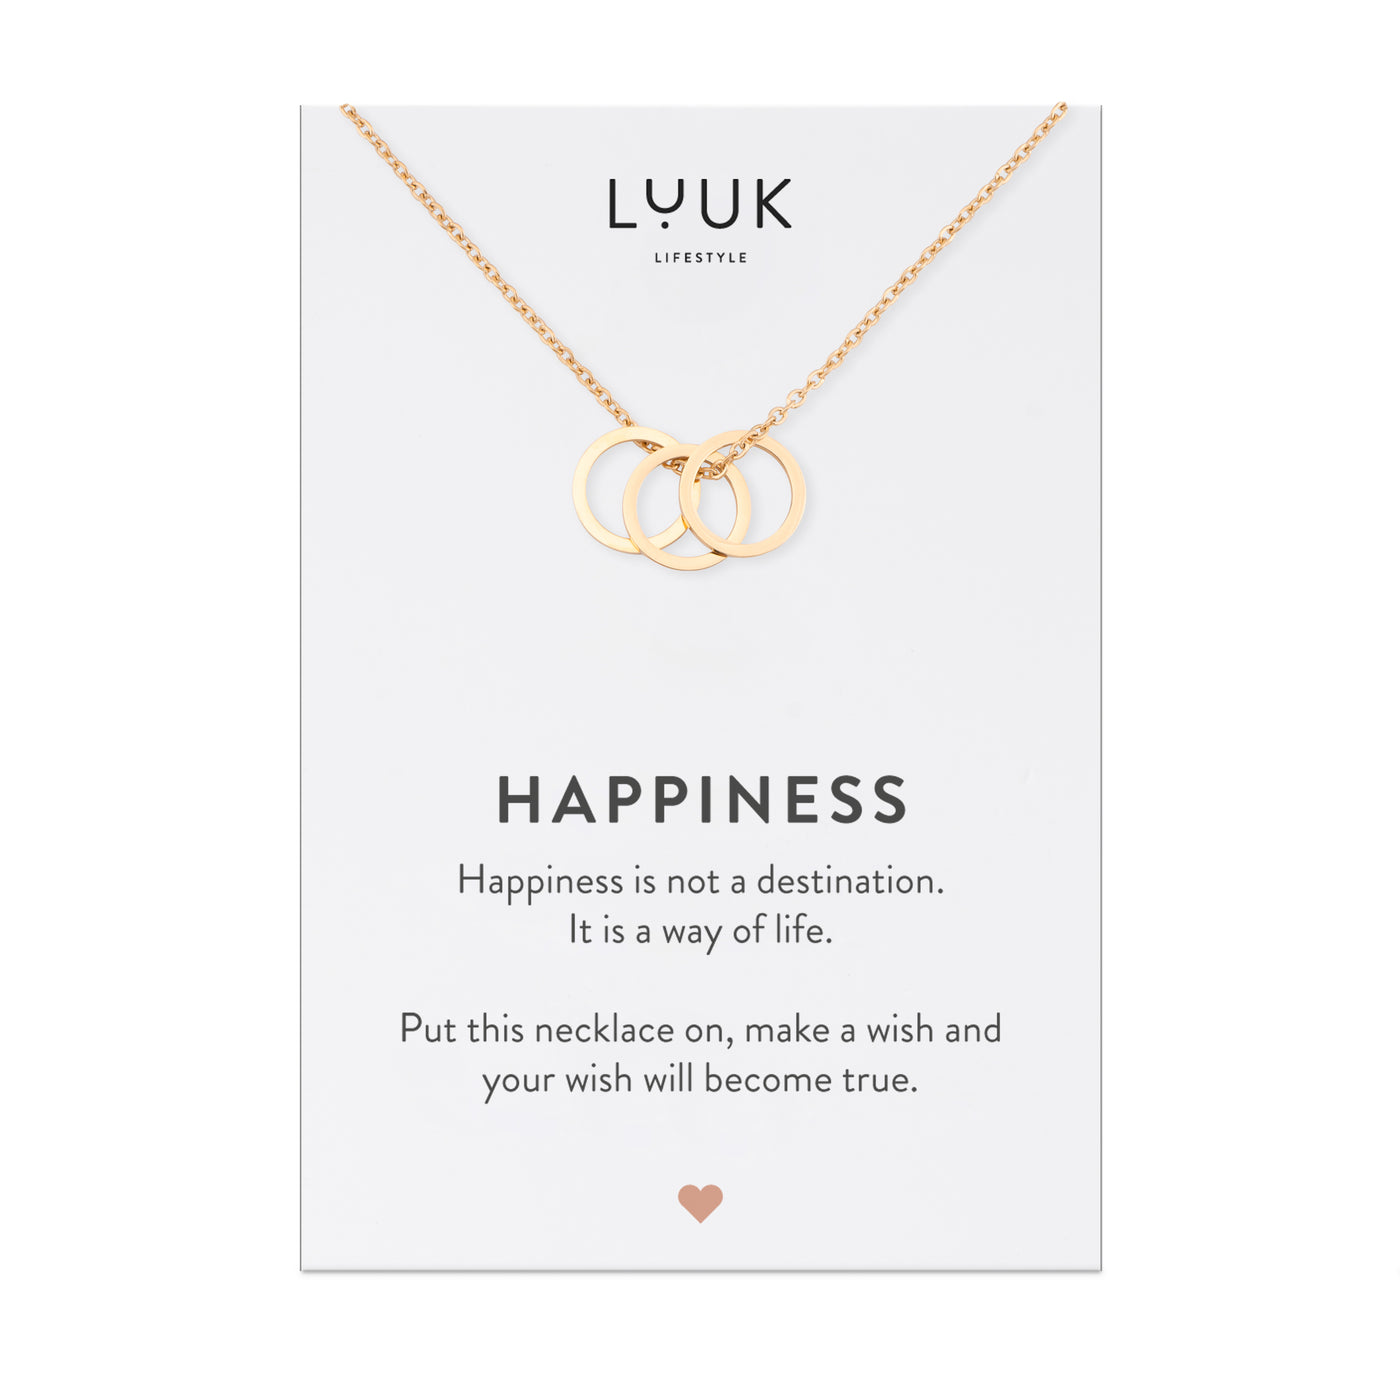 Gold Kette mit Kreis Anhängern aus Edelstahl auf Happiness Spruchkarte von der Brand Luuk Lifestyle